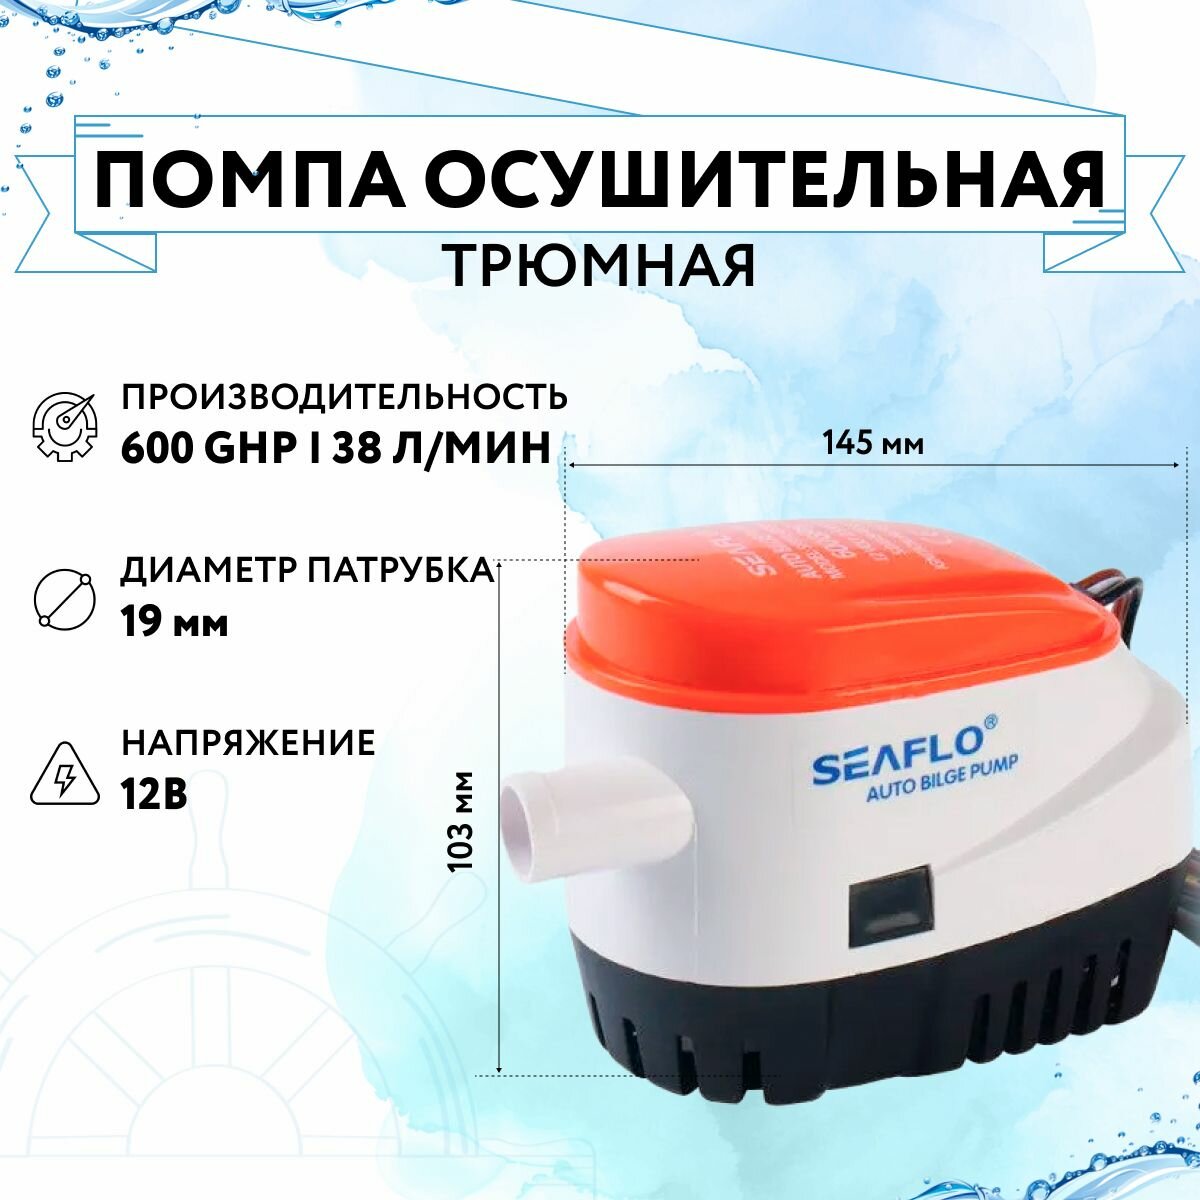 Помпа осущительная 12 В 600GPH (2271 л/час) автоматическая SeaFlo